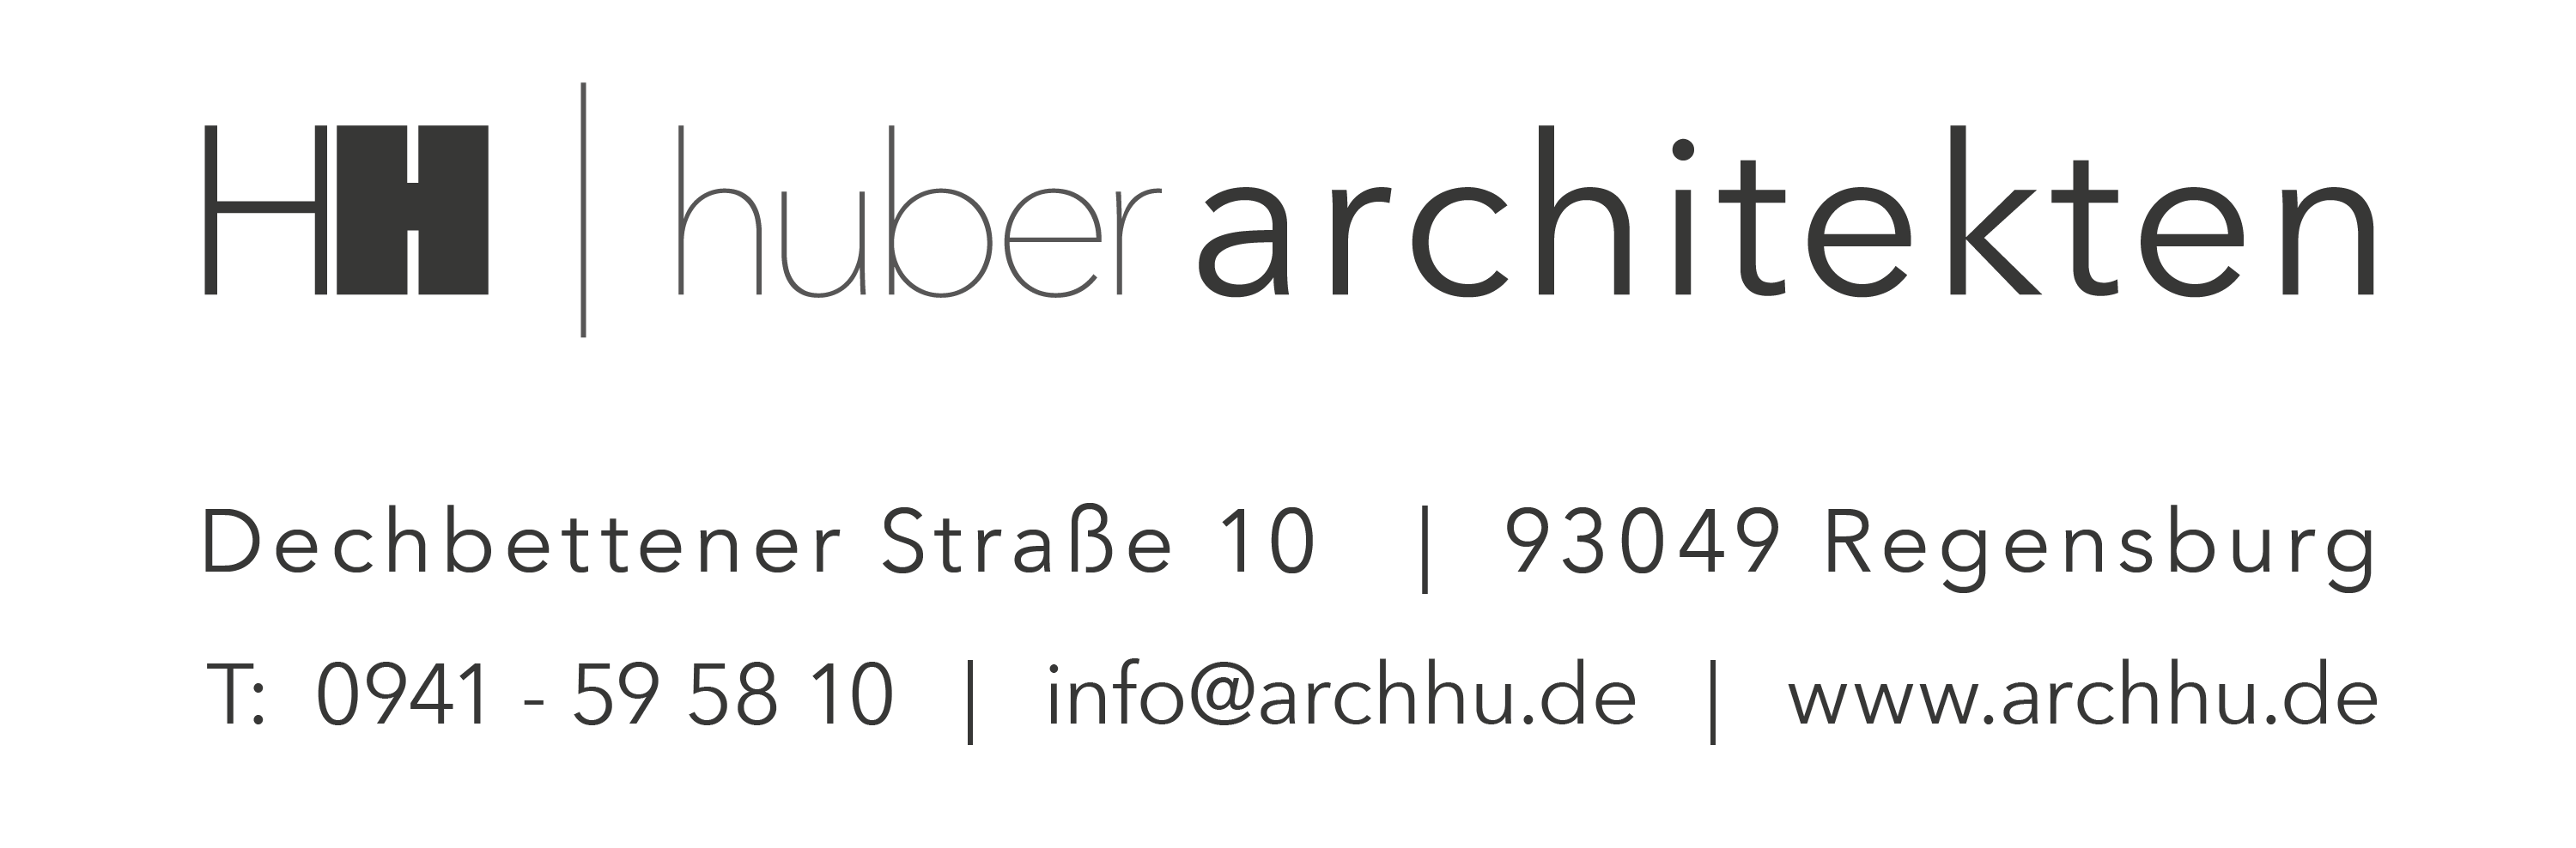 huber architekten Logo